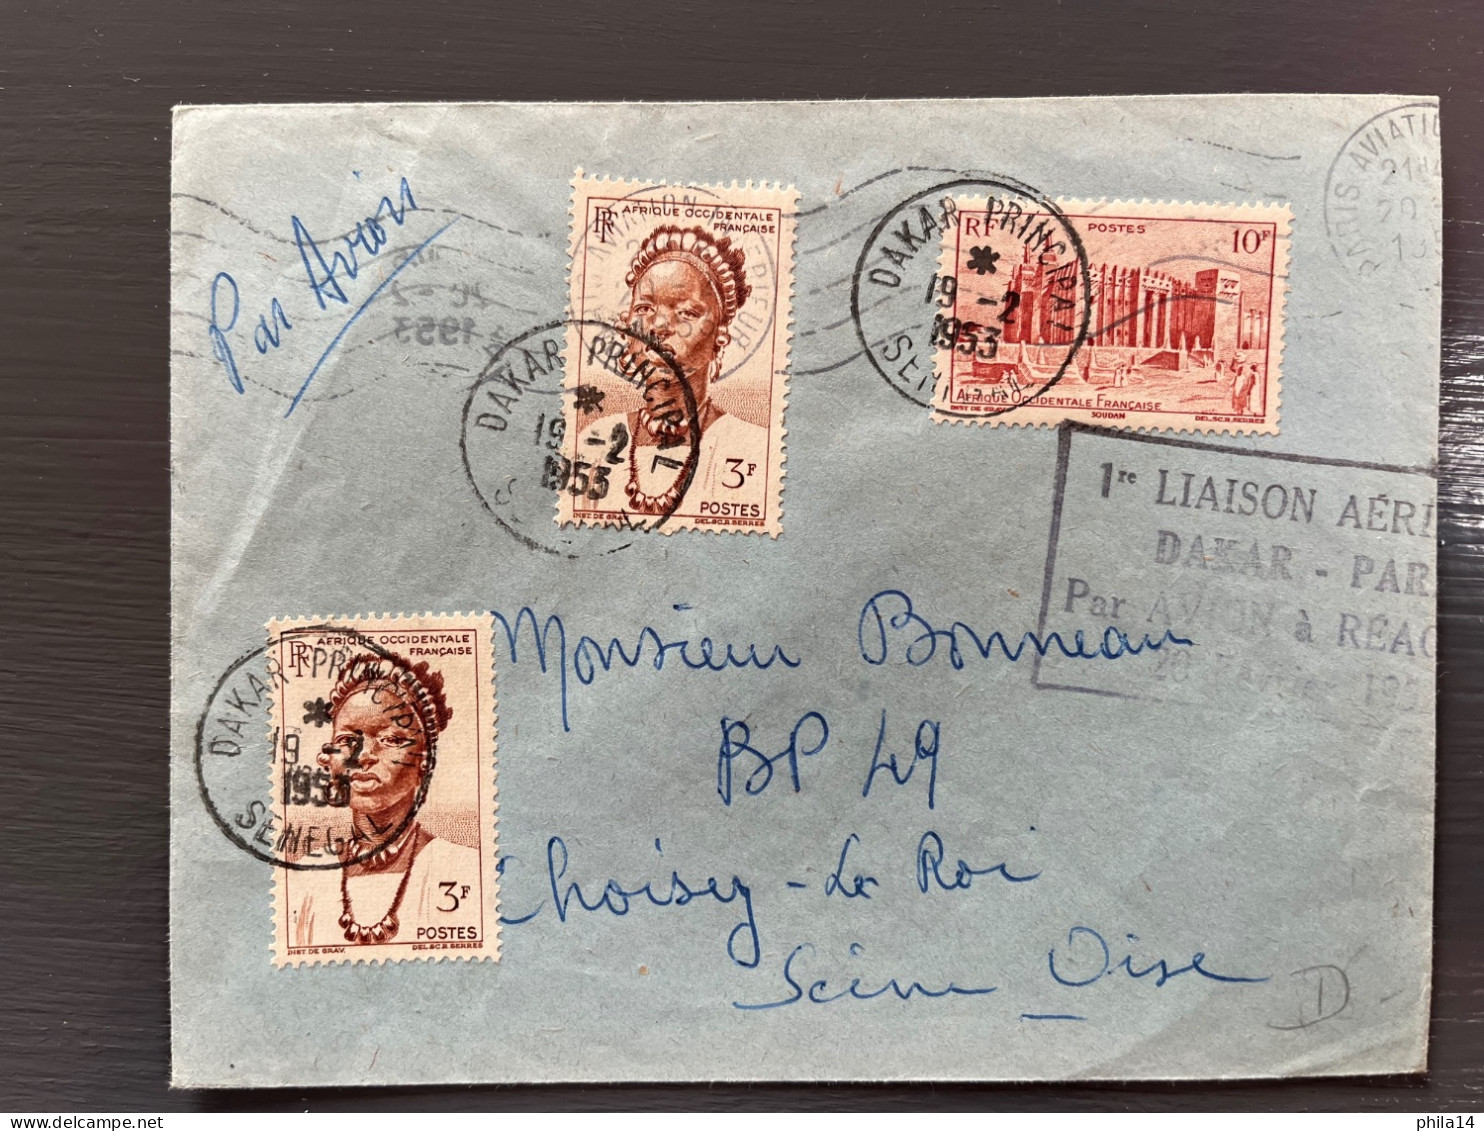 ENVELOPPE SENEGAL / DAKAR PRINCIPAL 1953 POUR CHOISY LE ROI / 1ERE LIAISON DAKAR PARIS PAR AVION A REACTION - Senegal (1960-...)